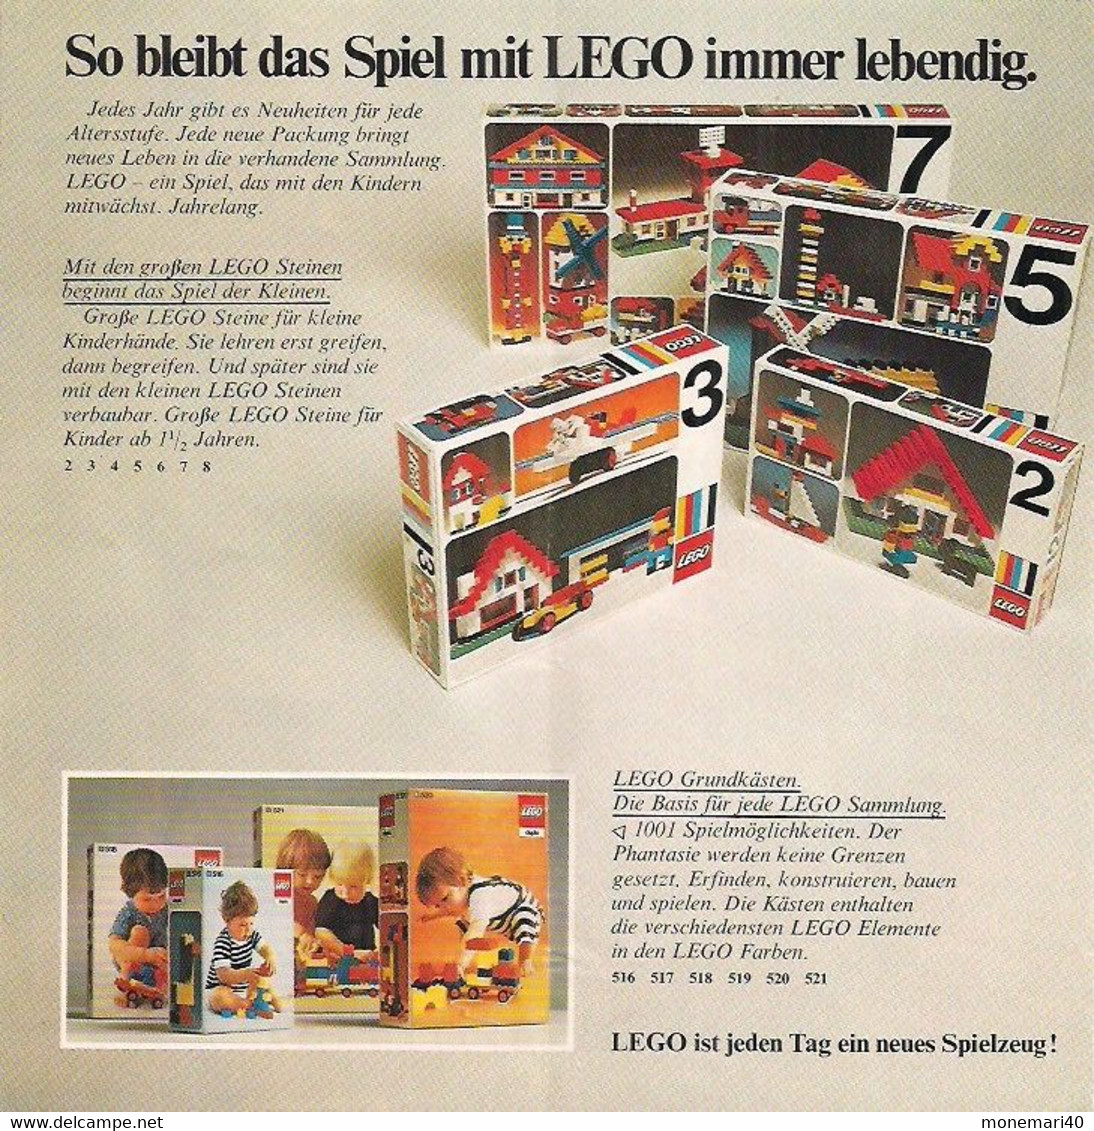 LEGO SYSTEM - CATALOGUE - NEUE SPIELIDEEN VON  LEGO - 1975. - Kataloge